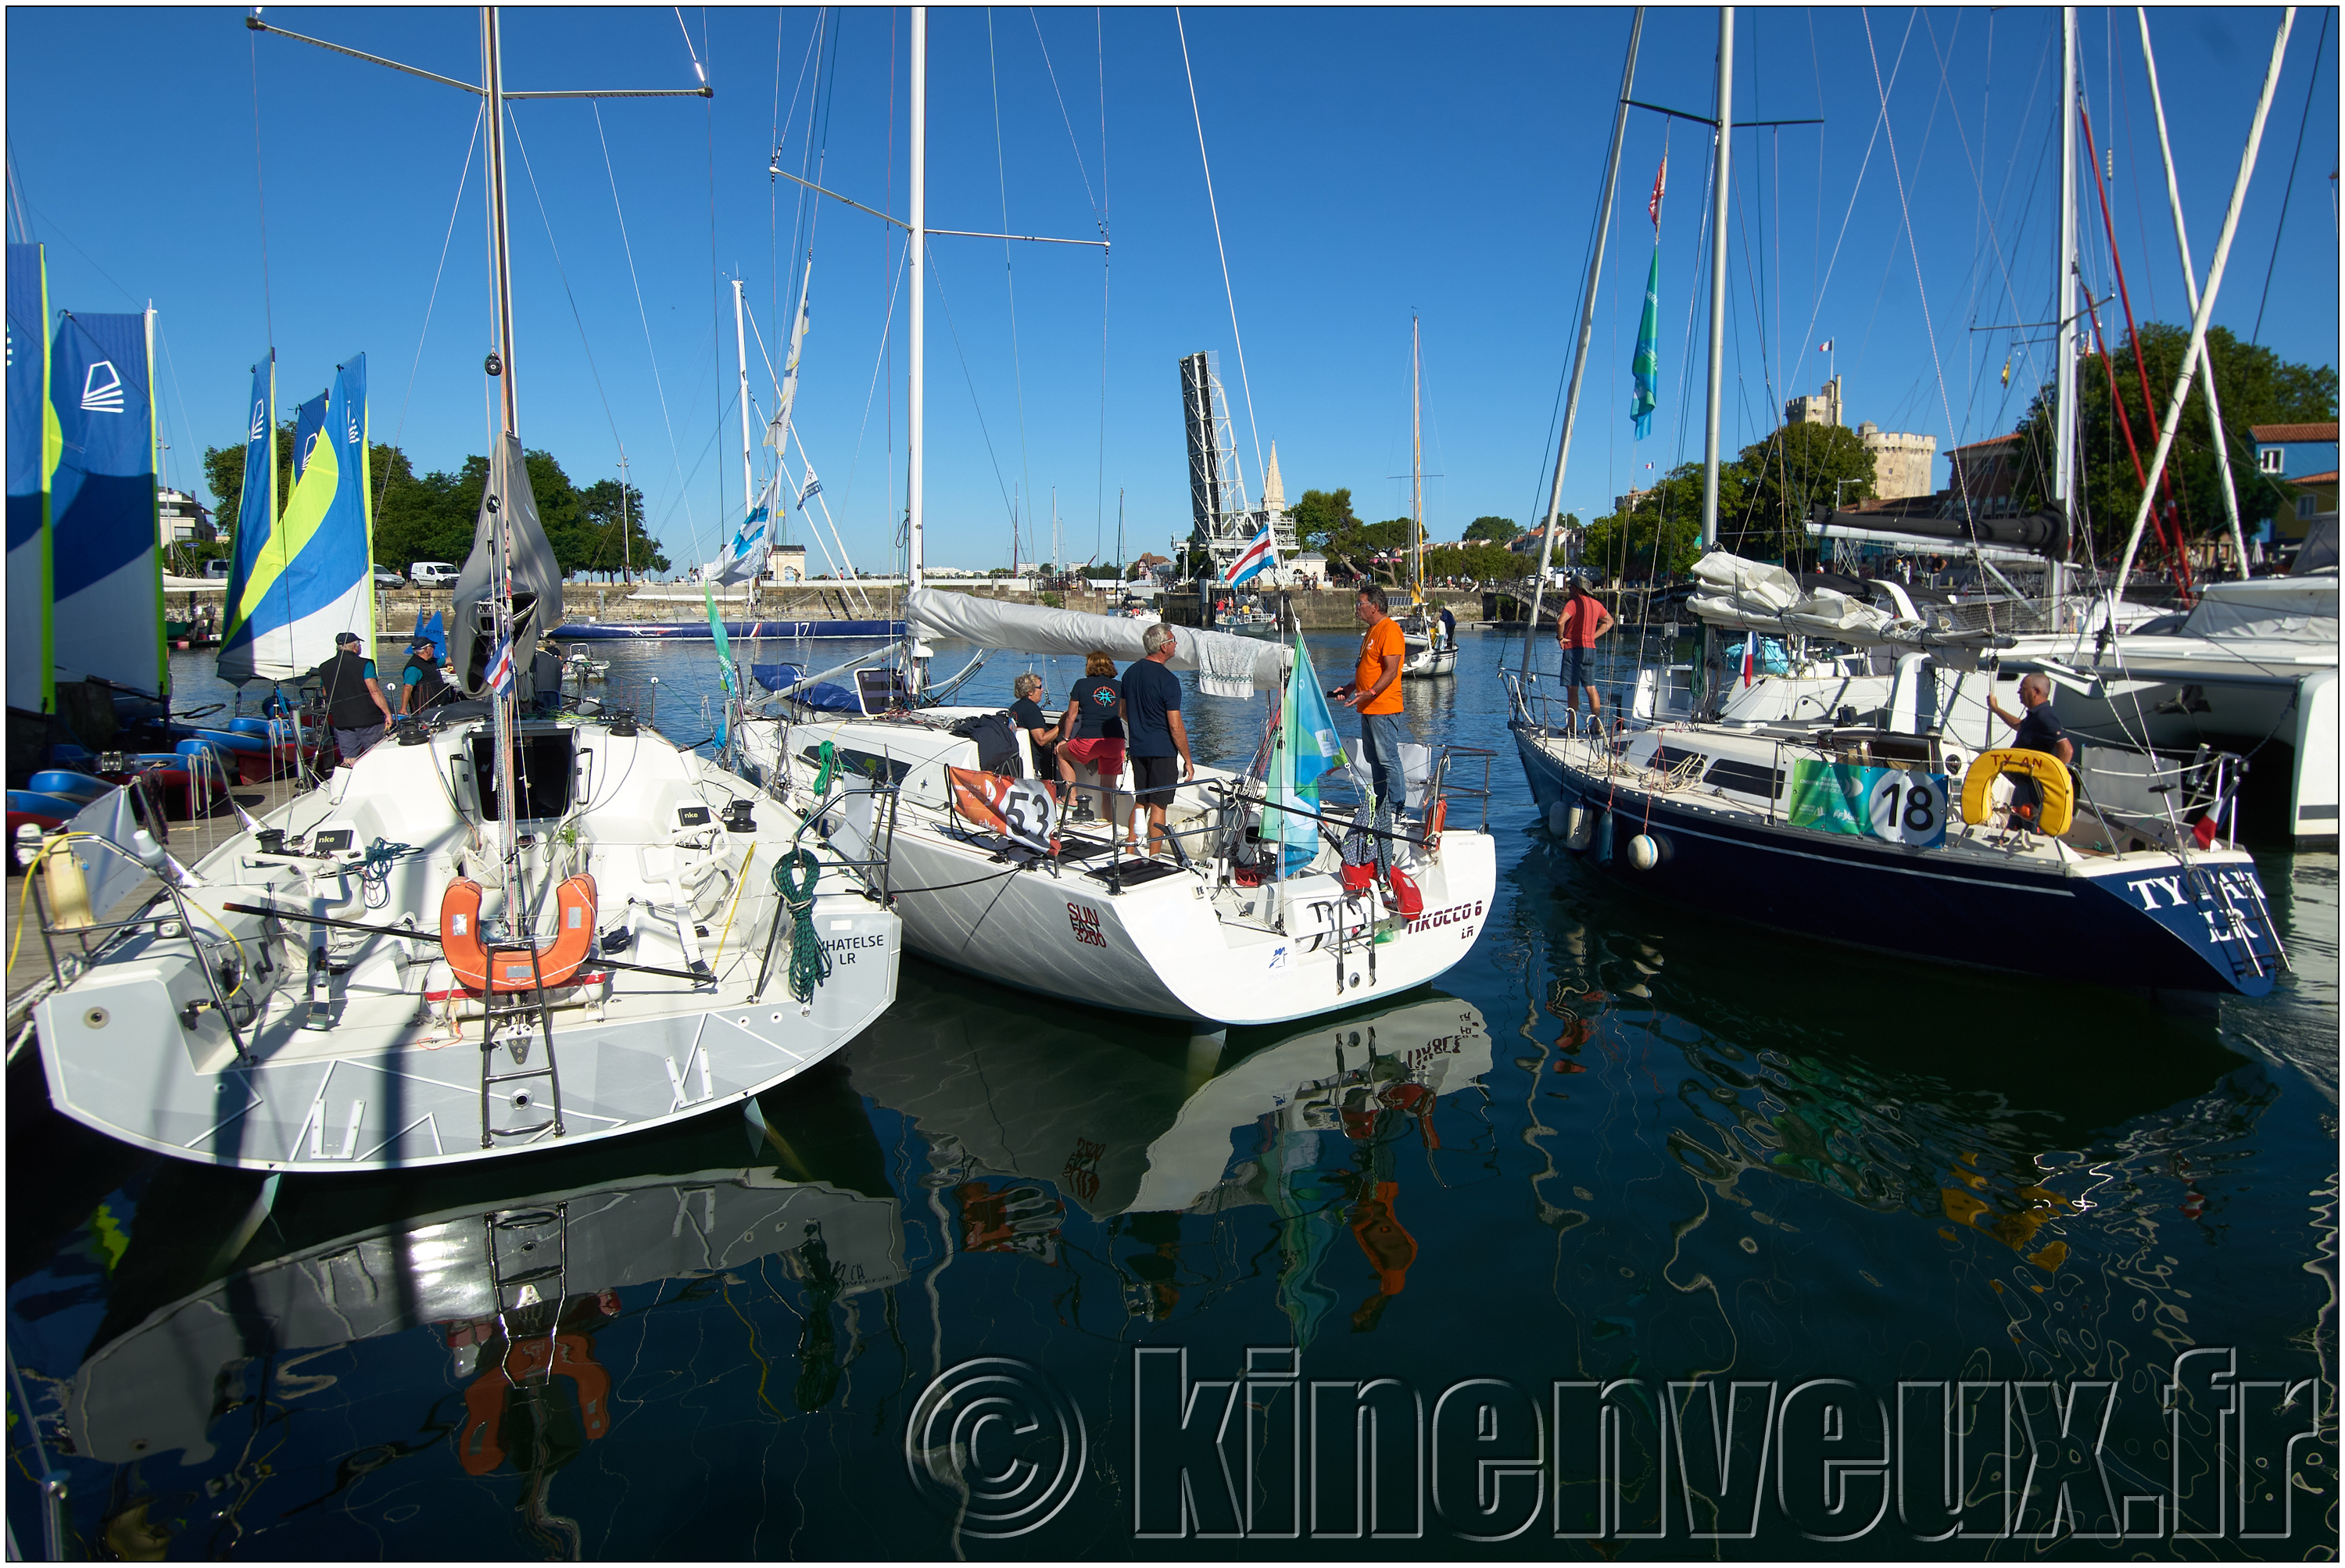 kinenveux_photographie_TourVoile17_056.jpg - les bateaux se préparent à sortir du bassin en ce mercredi matin